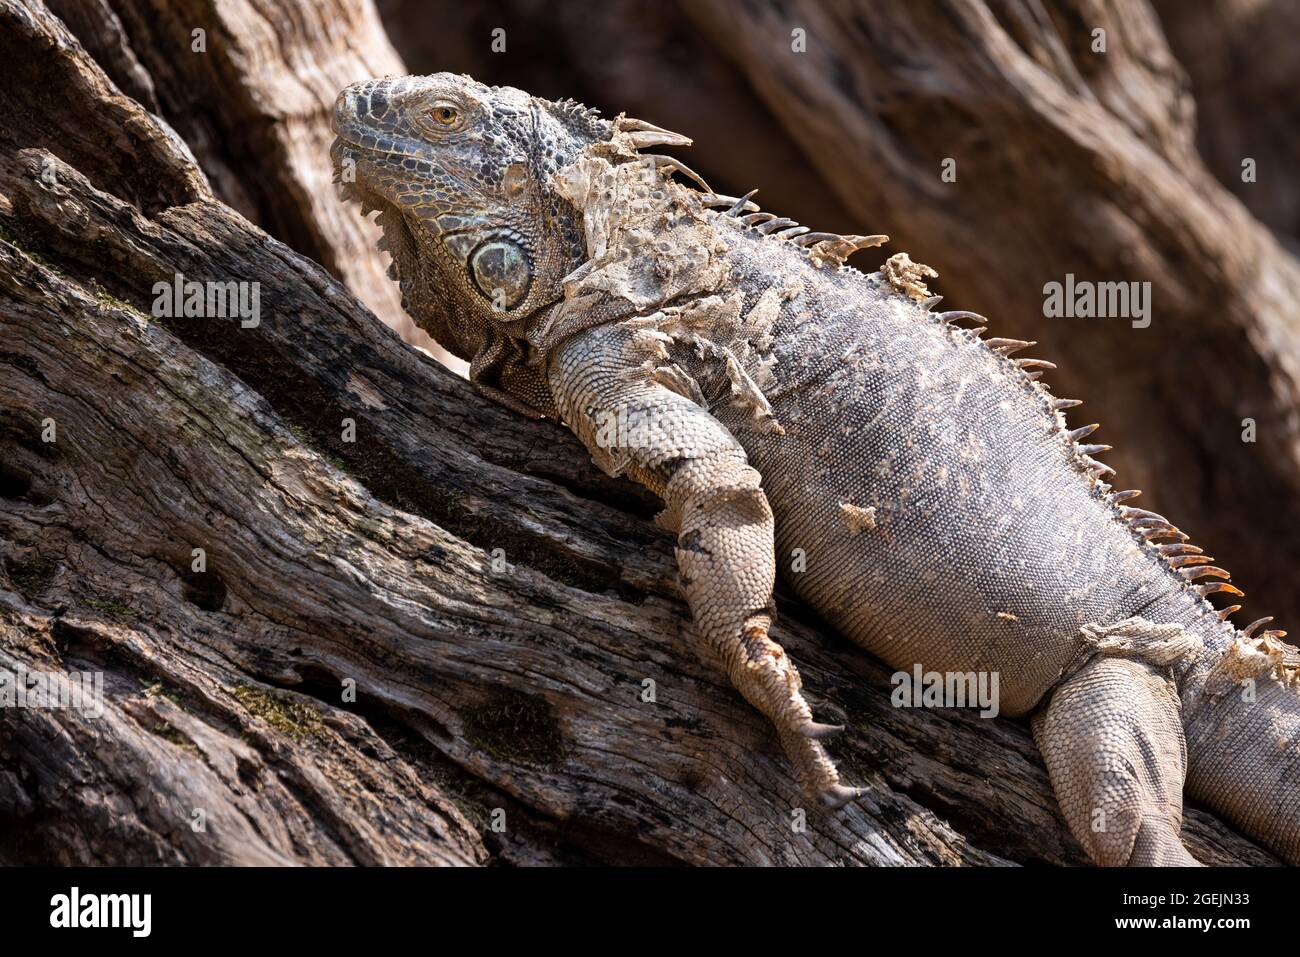 Primer plano perfil portait de una iguana verde tumbada en una rama del árbol y desprendiéndose su piel Foto de stock